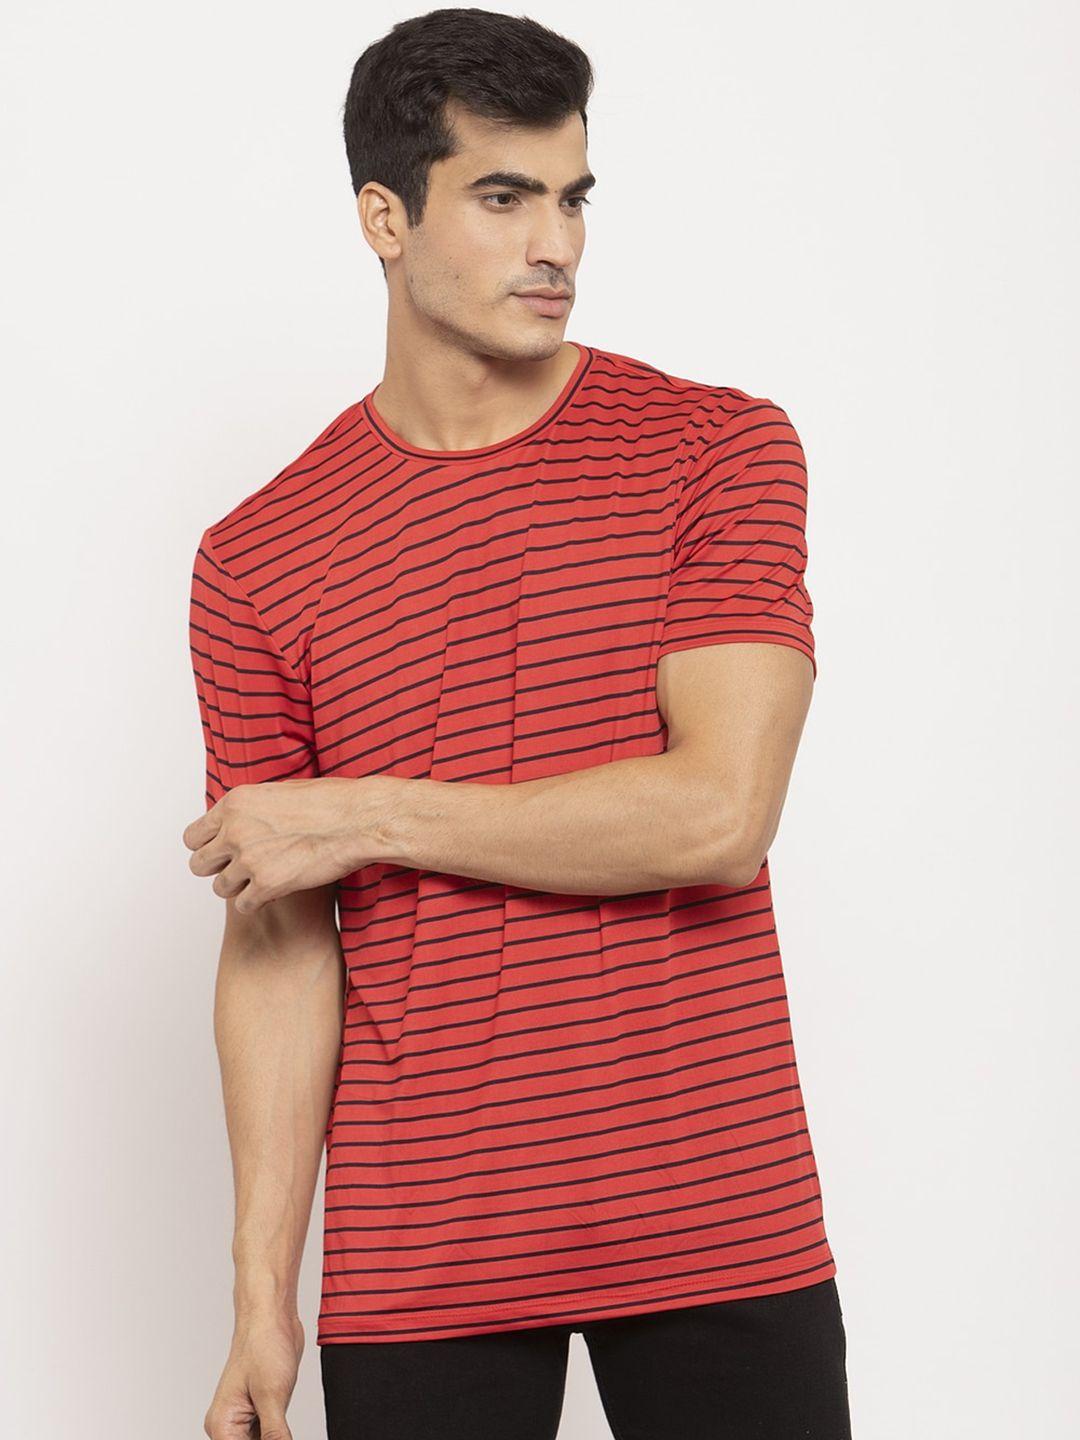 door74-men-red-&-black-striped-t-shirt